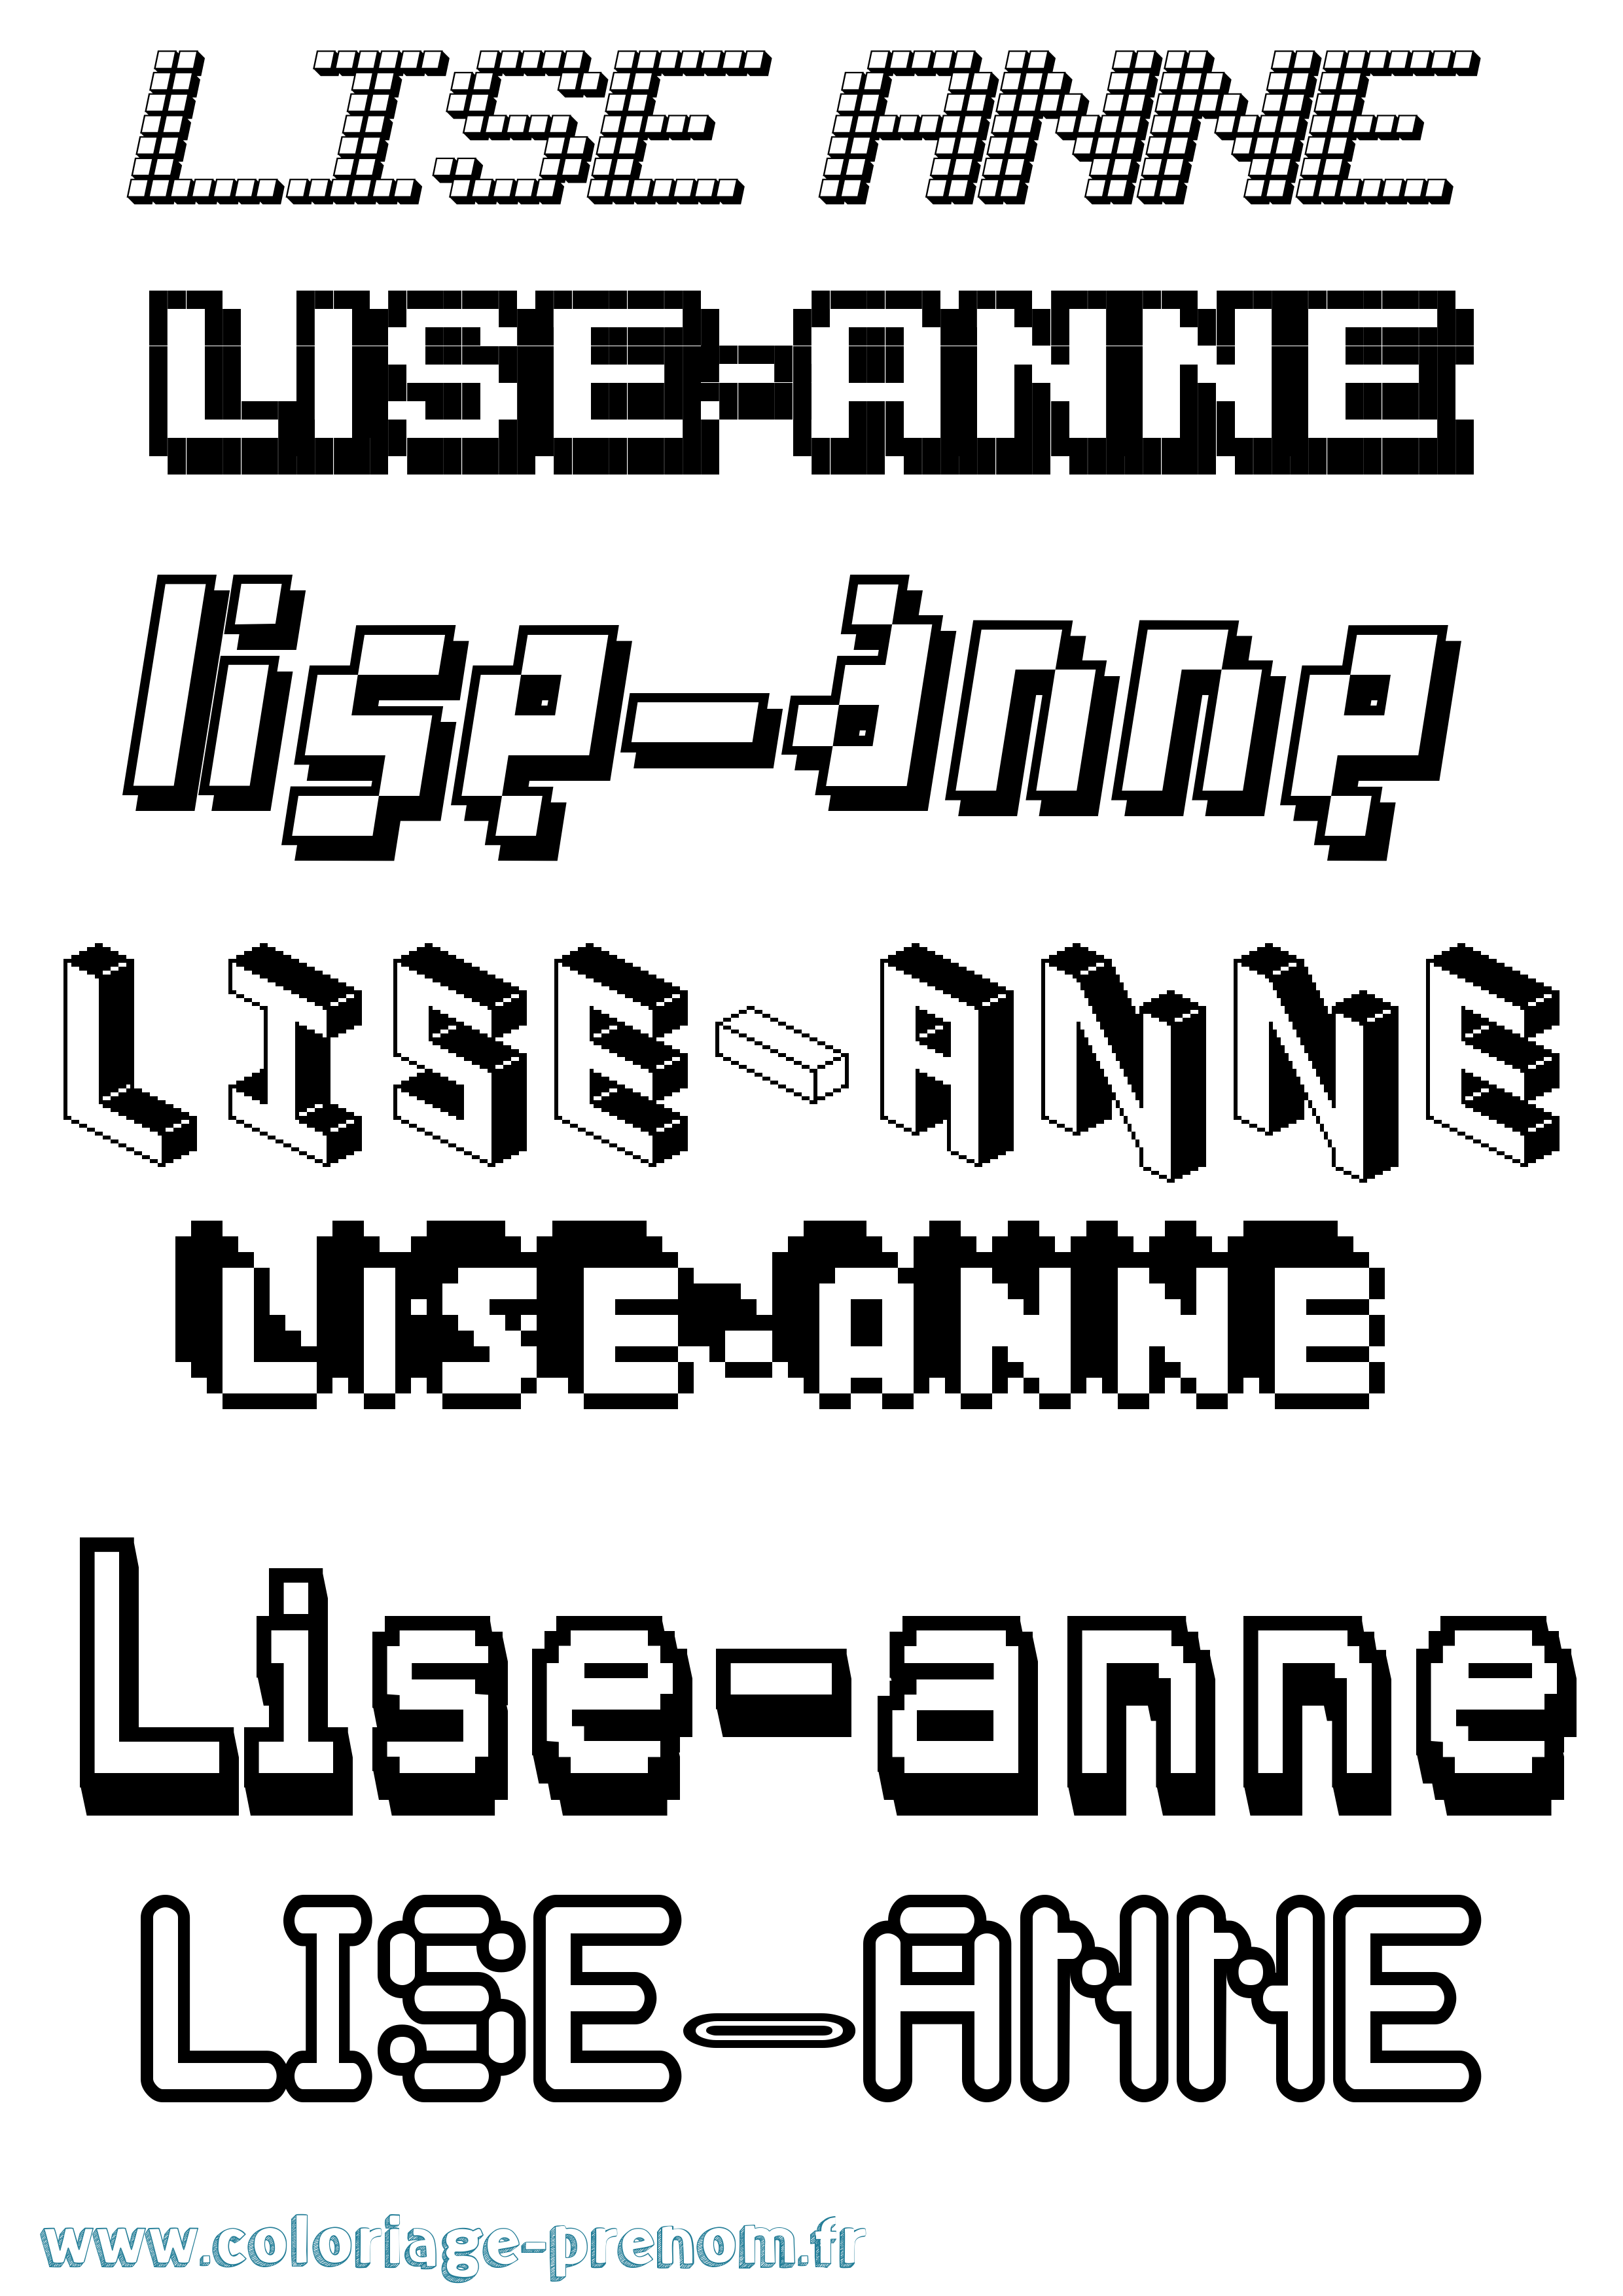 Coloriage prénom Lise-Anne Pixel